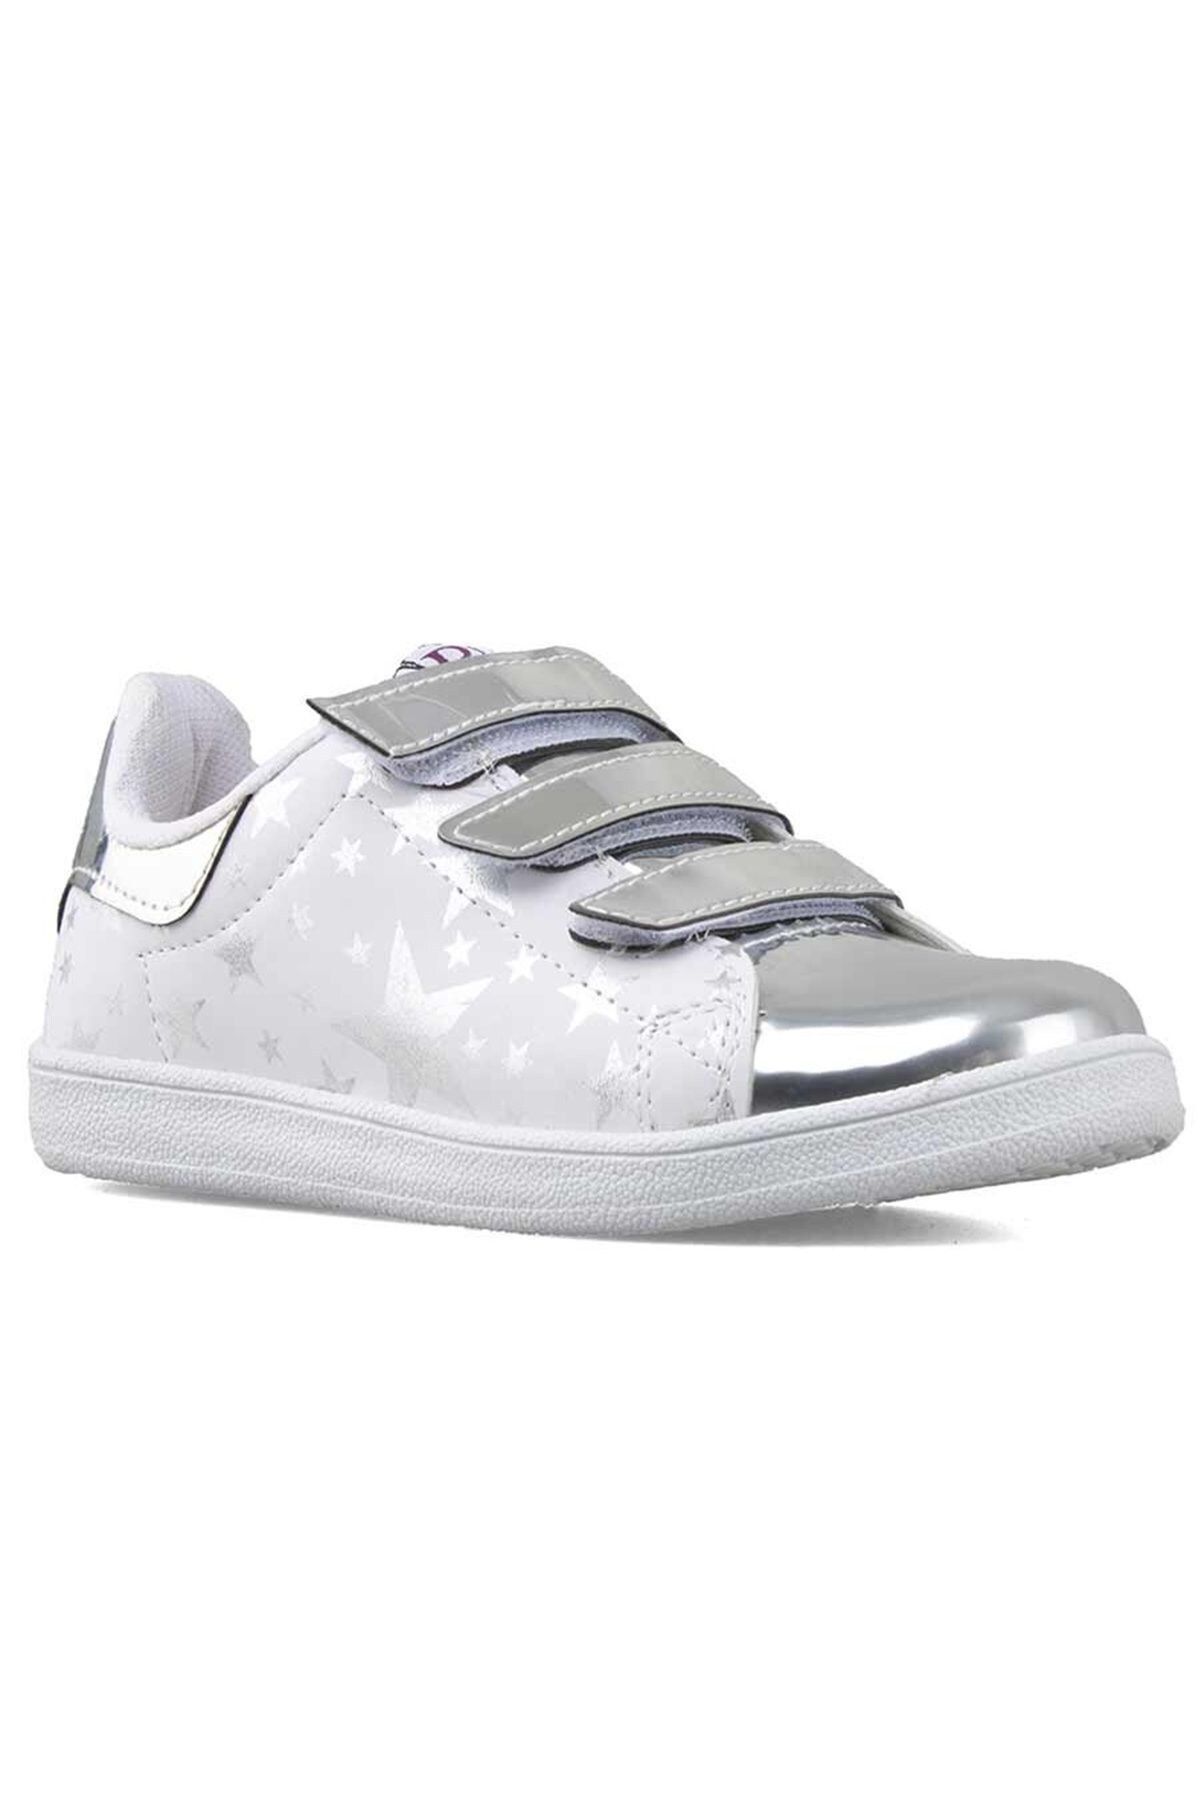 Le Petite kız çocuk günlük kullanım yeni sezon gümüş-beyaz renk lepetit flet ayakkabı